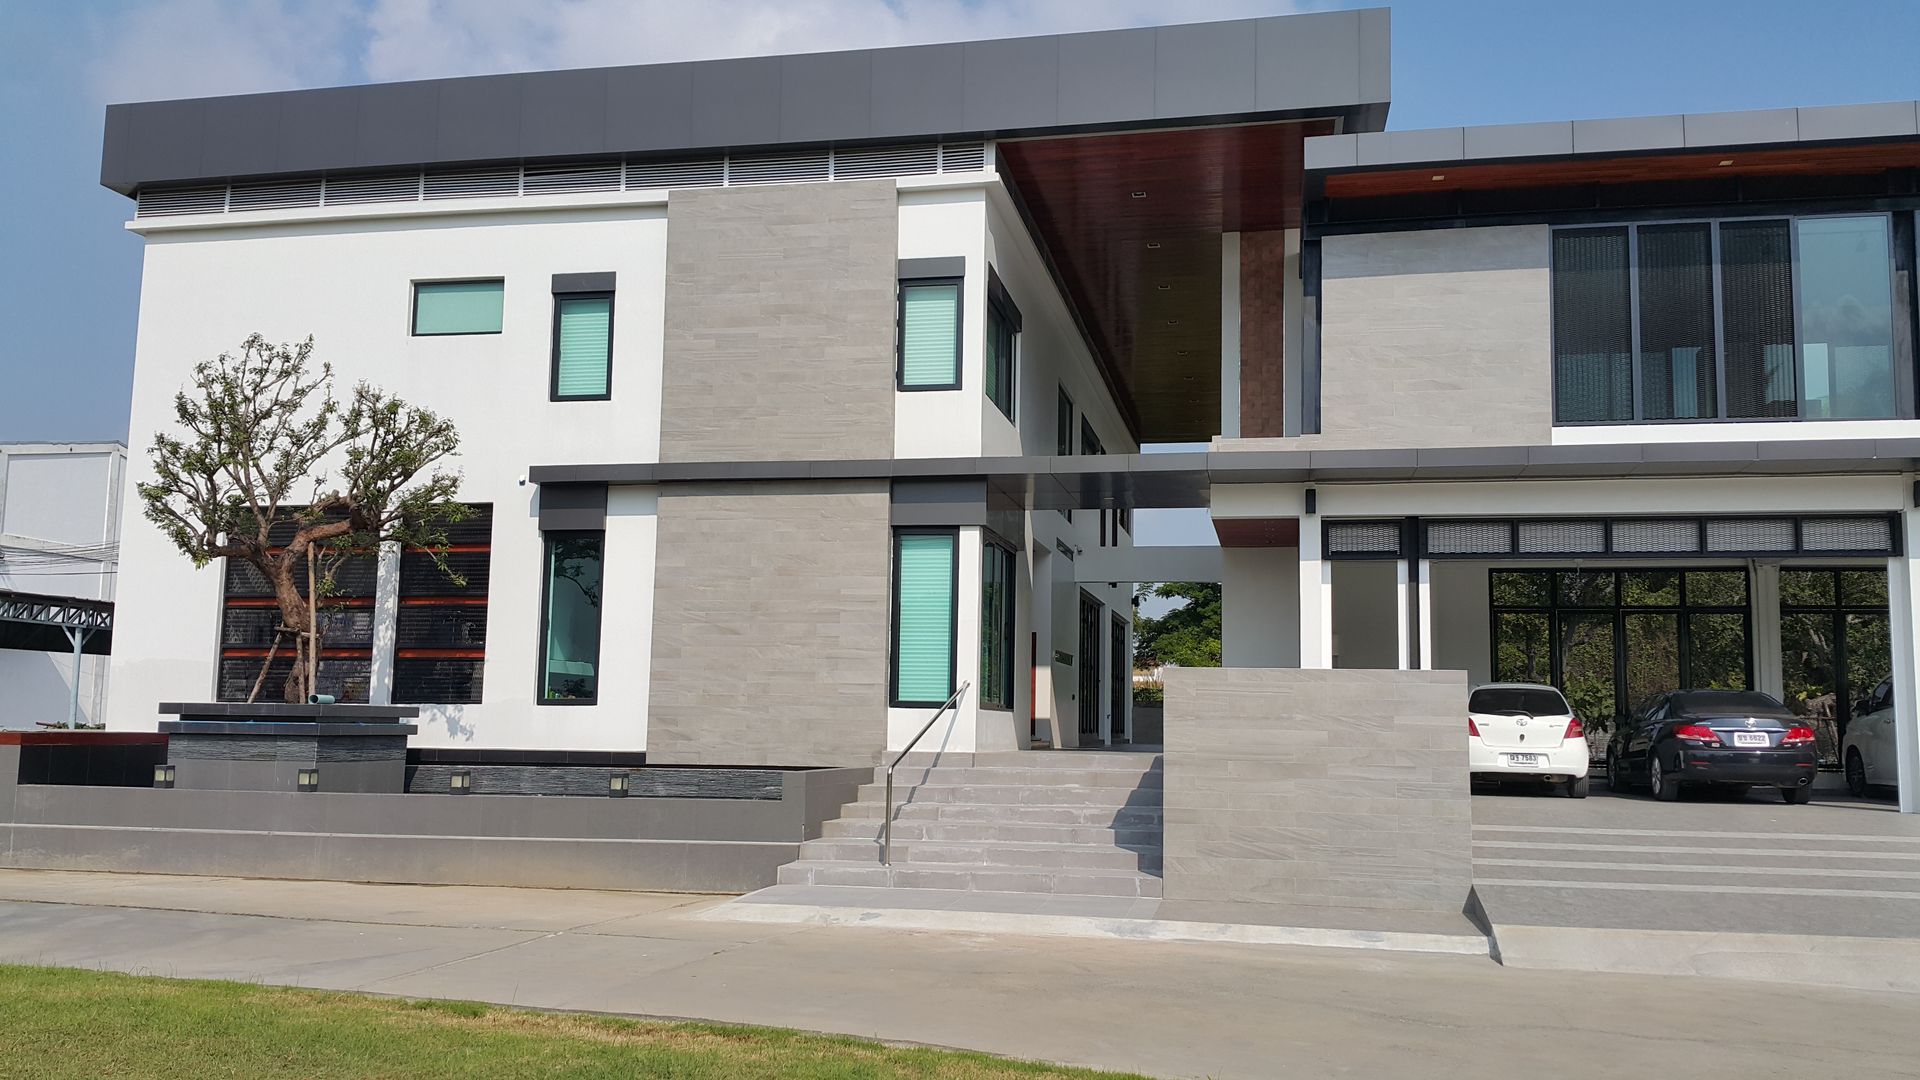 ผลงานออกแบบ-สร้างบ้านพักอาศัย 2 ชั้น Modern Style by KL-Cons., บริษัท เค.แอล.คอนสตรัคชั่น แอนด์ ซัพพลาย จำกัด บริษัท เค.แอล.คอนสตรัคชั่น แอนด์ ซัพพลาย จำกัด Casas de estilo moderno